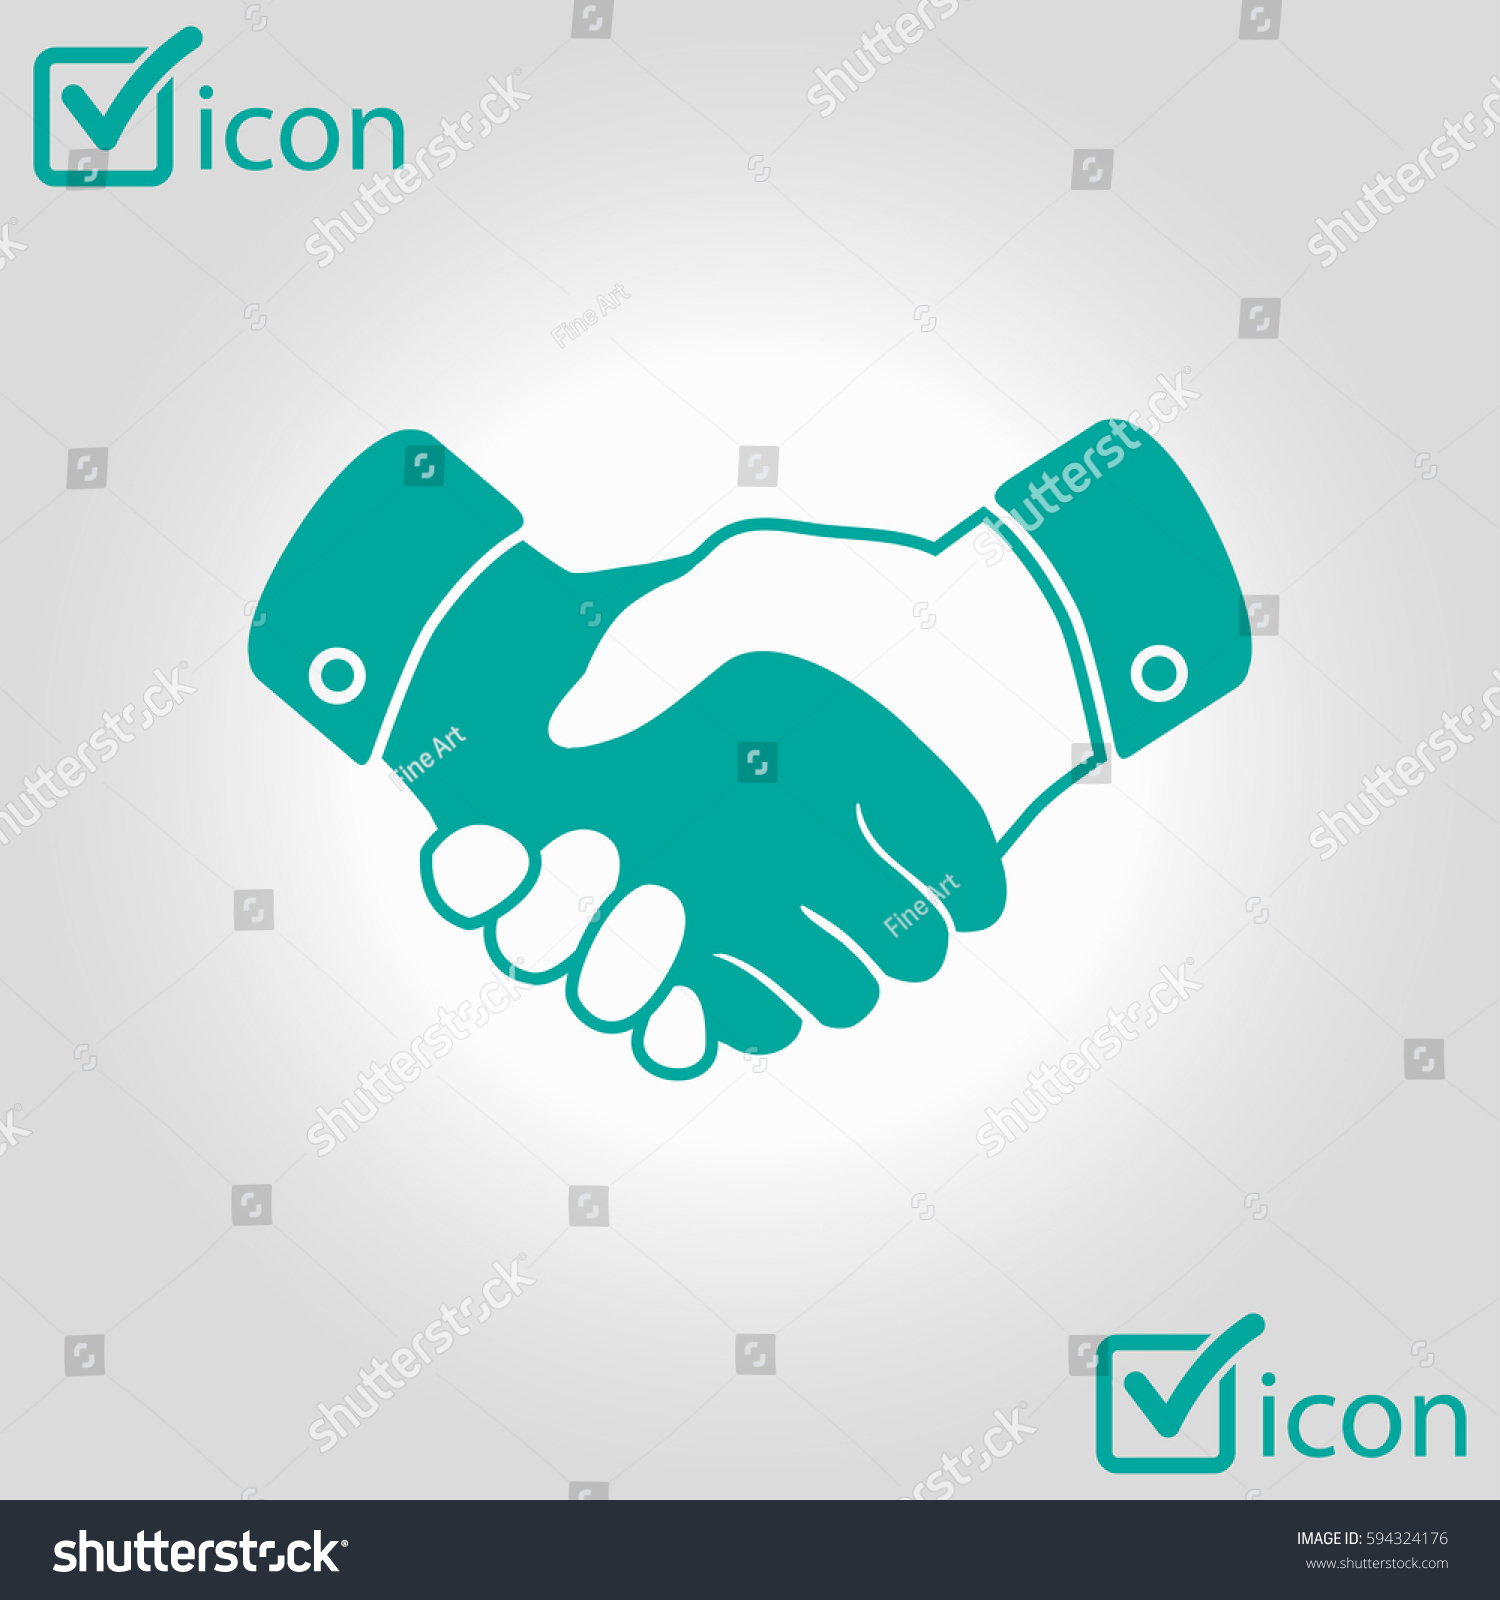 Edit Vectors Free Online - Handshake sign | Shutterstock Editor